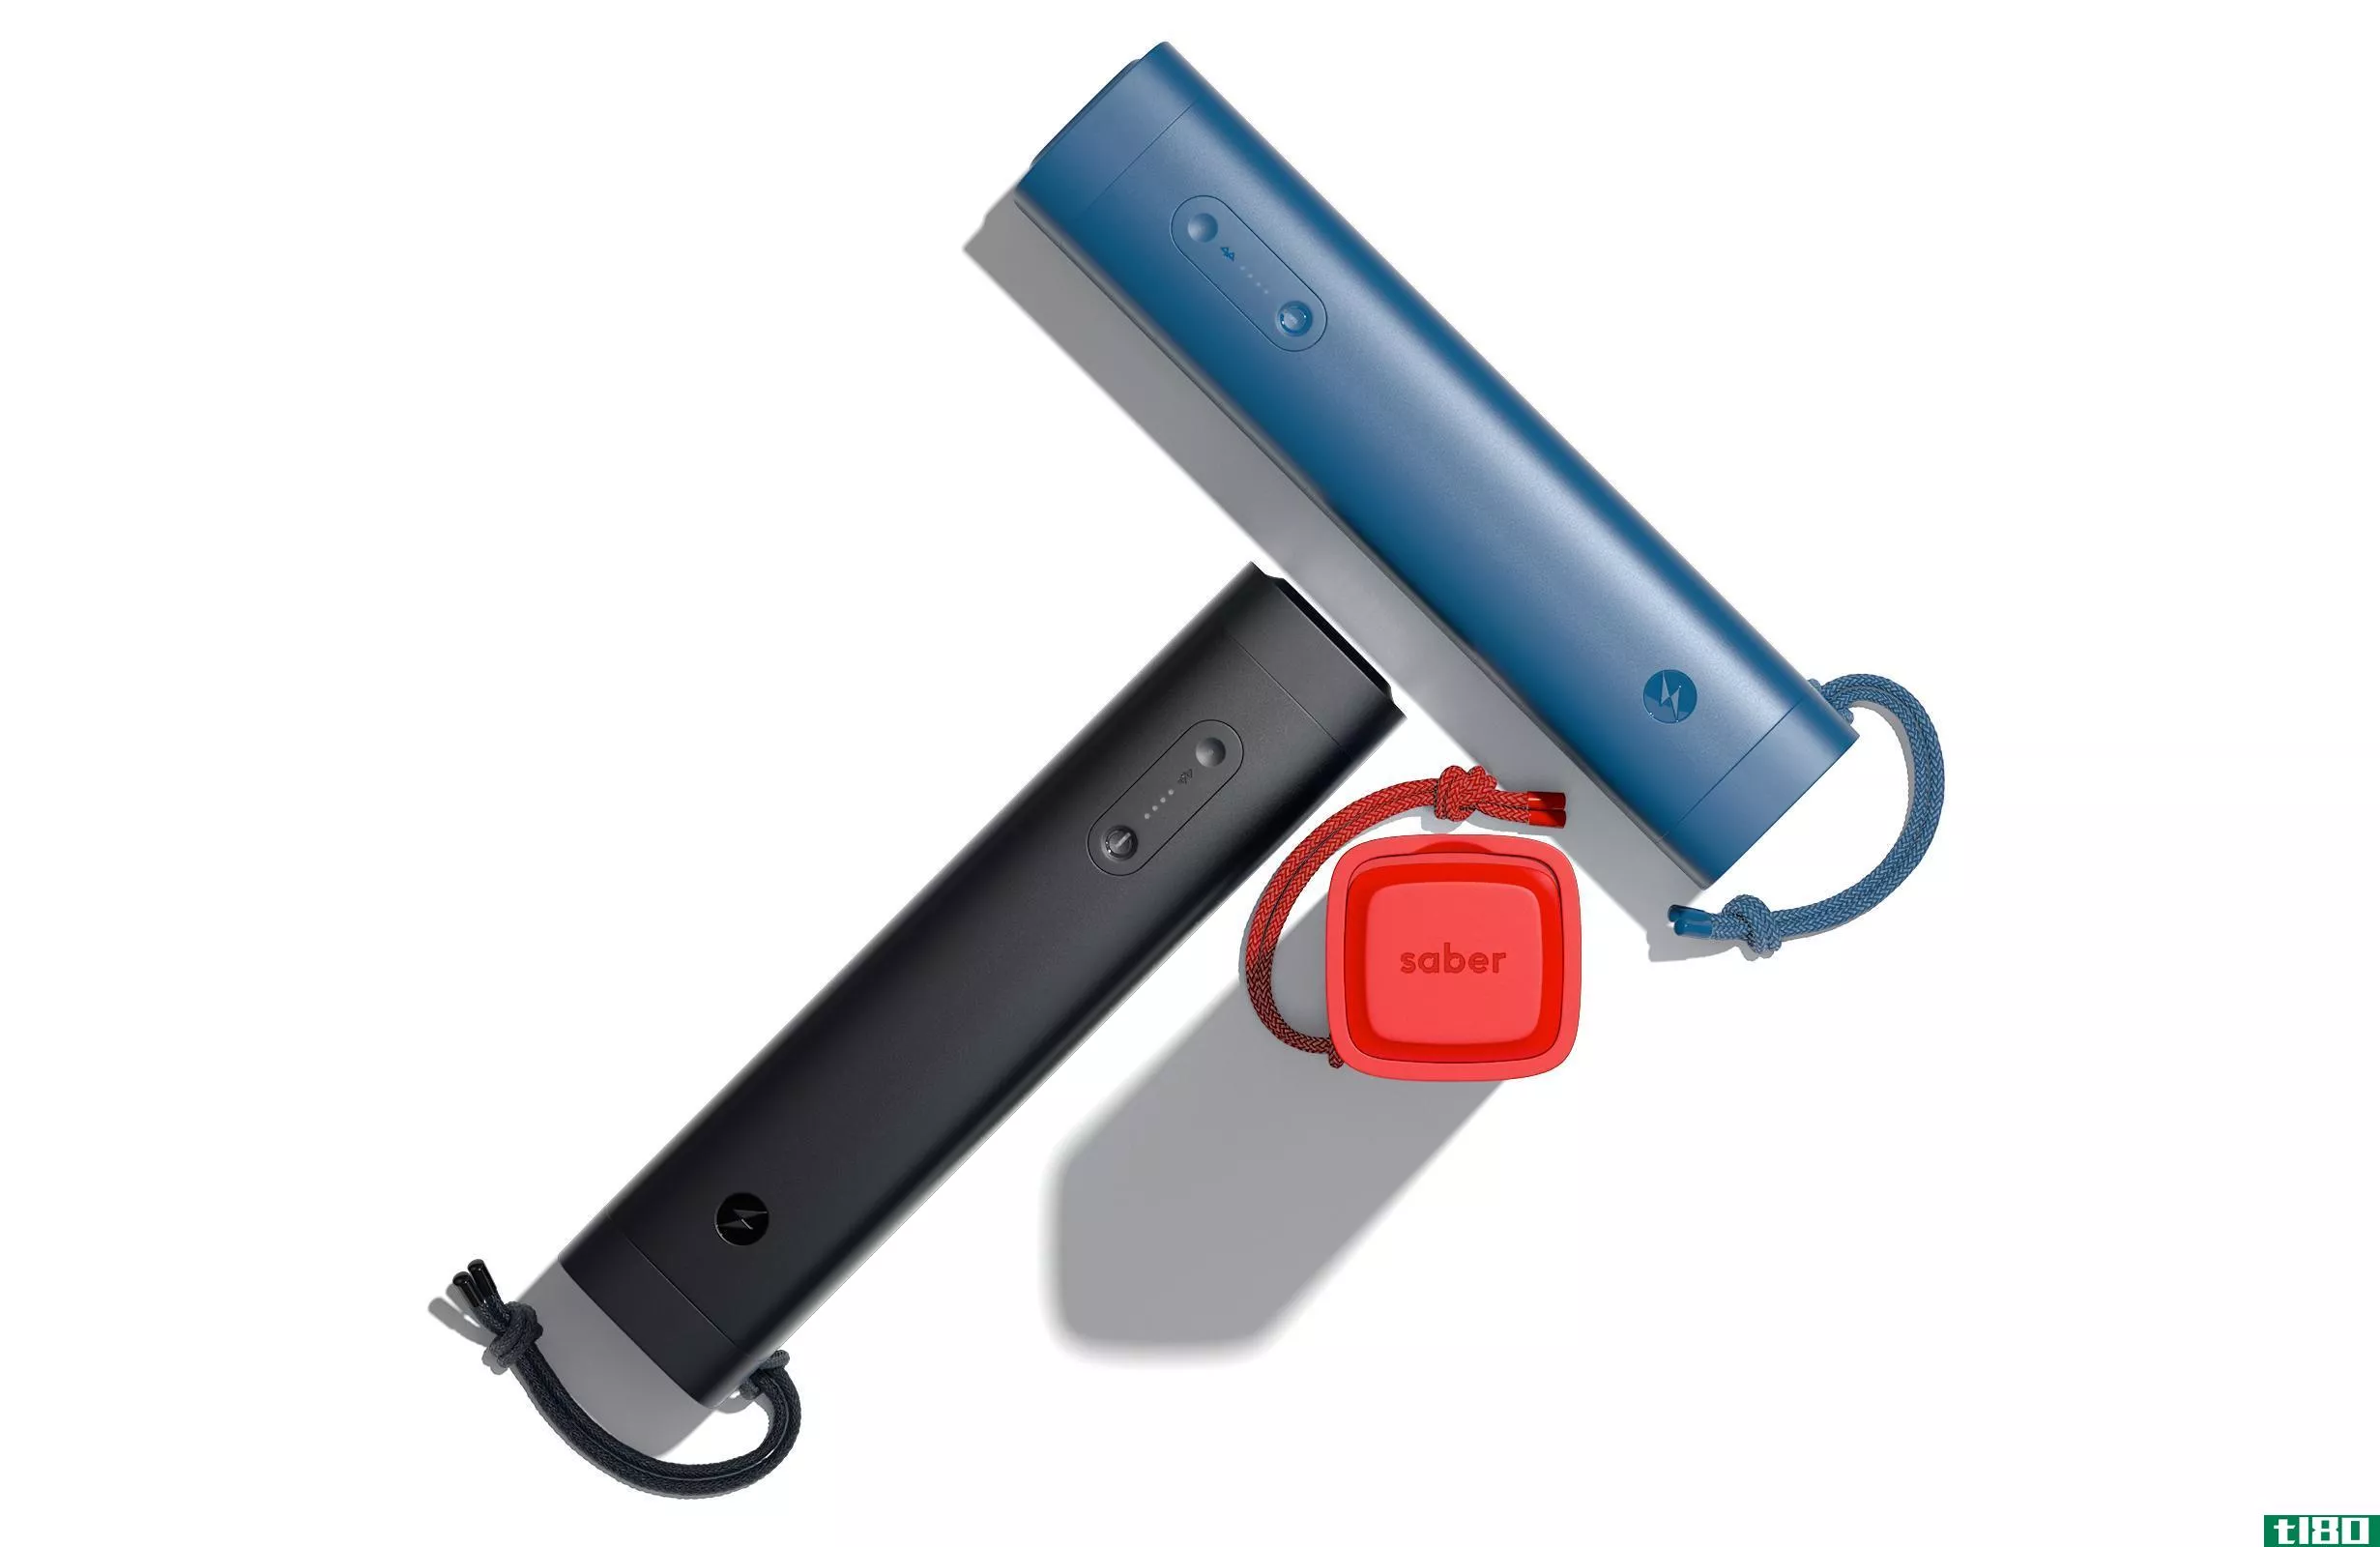 saber是一款坚固耐用的便携式电池，可以为笔记本电脑完全充电两次